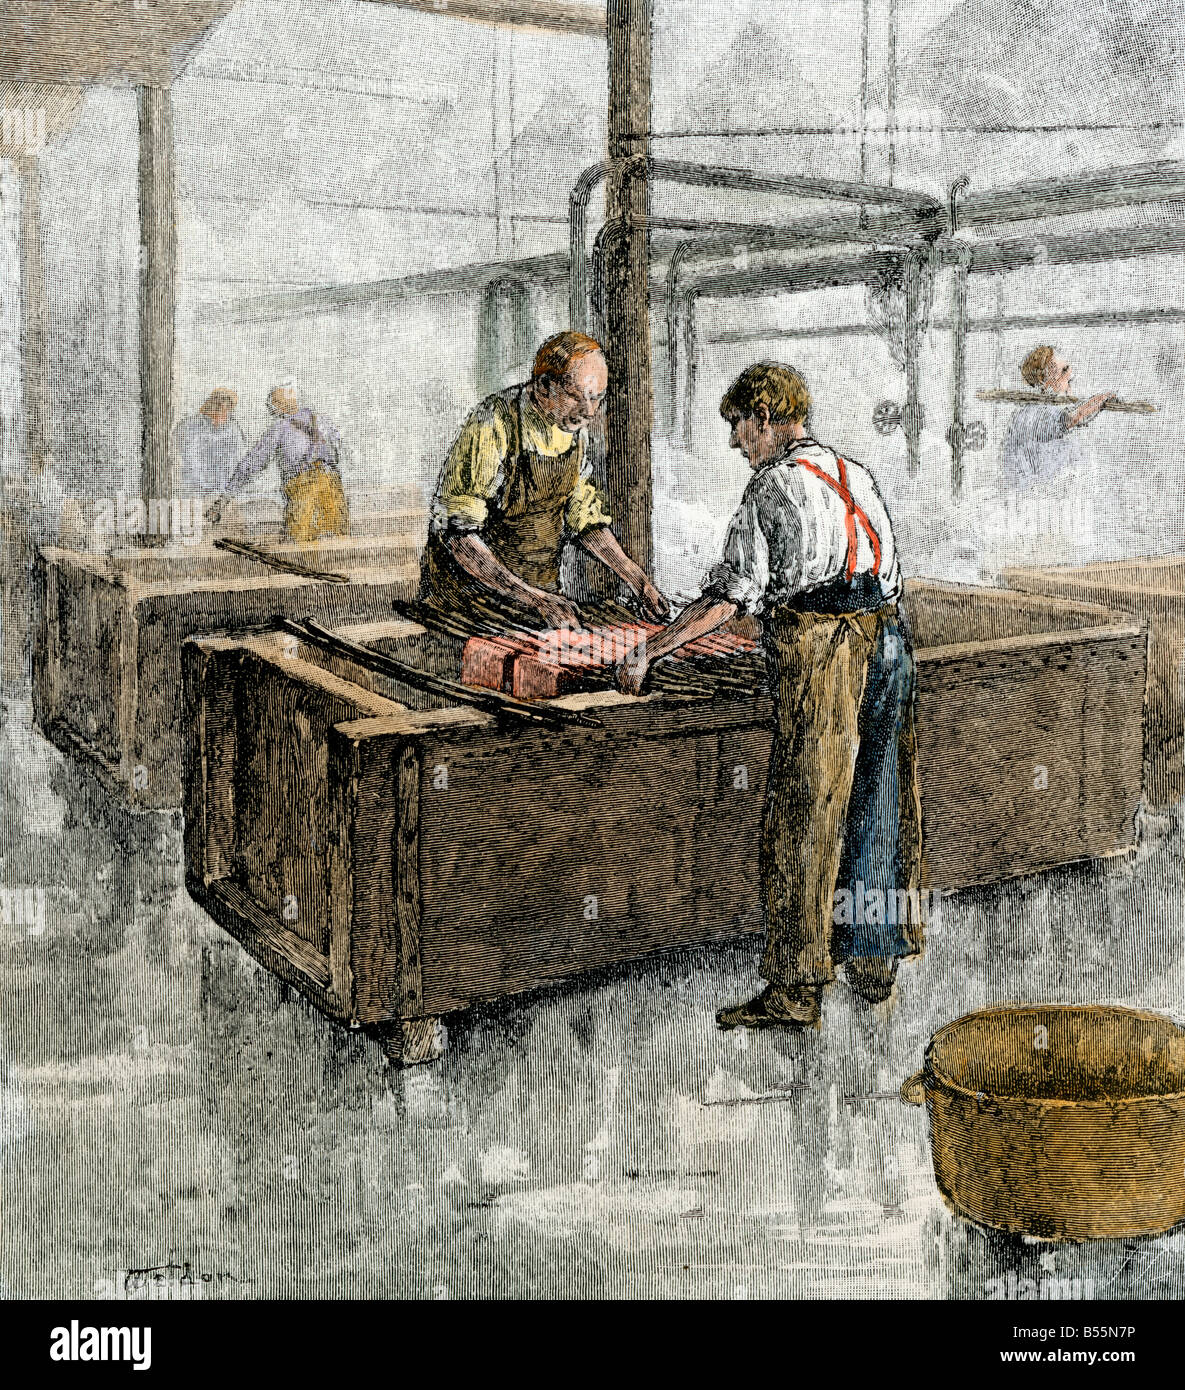 Les travailleurs de la teinture prix d'une usine de textile des années 1800. À la main, gravure sur bois Banque D'Images